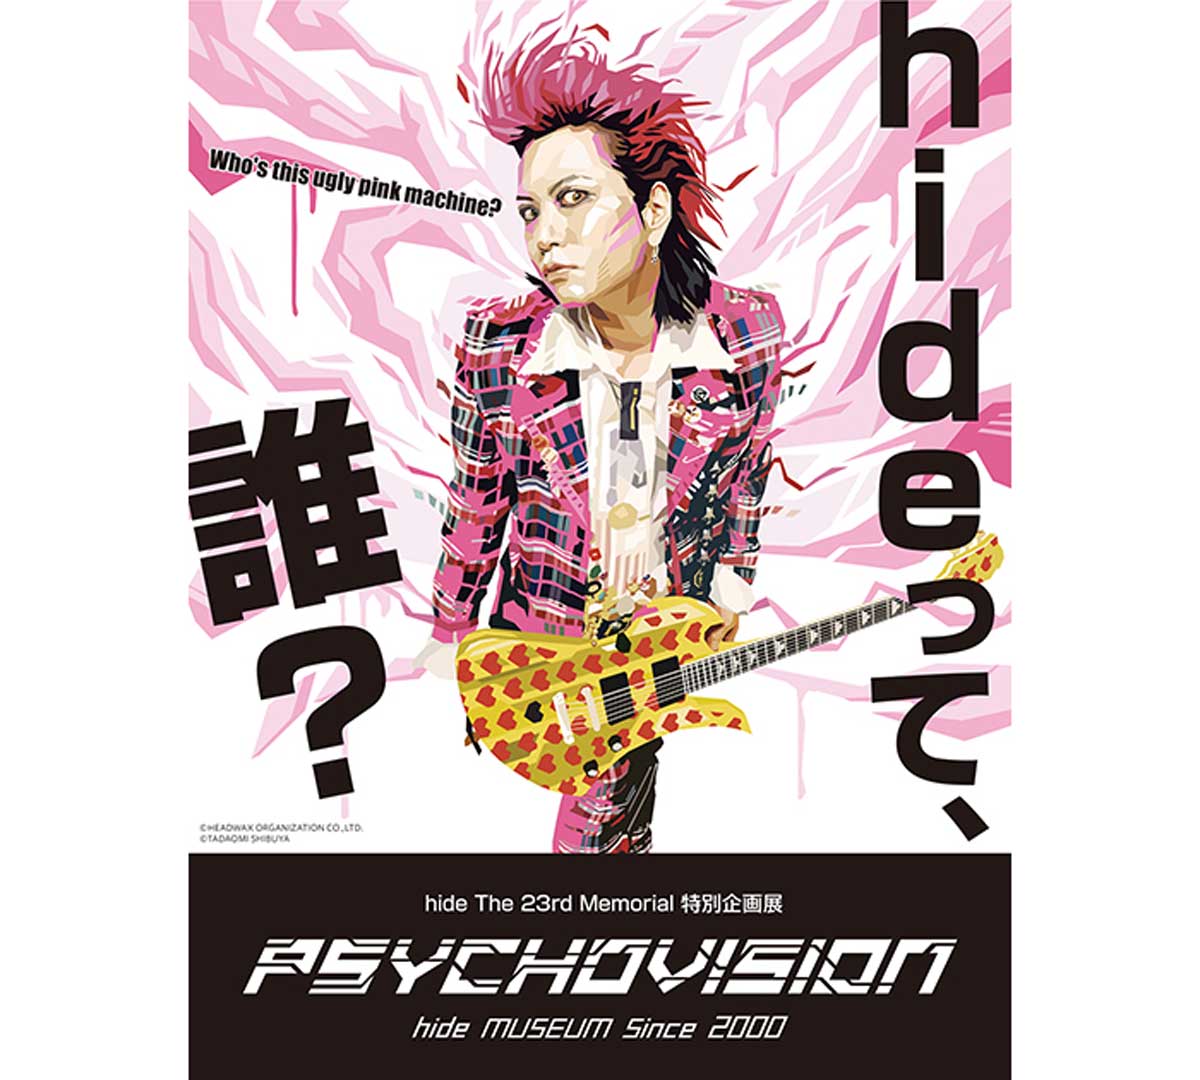 hideと一緒にARで撮影ができるコーナーが登場！名古屋で「PSYCHOVISION hide MUSEUM Since 2000」開催